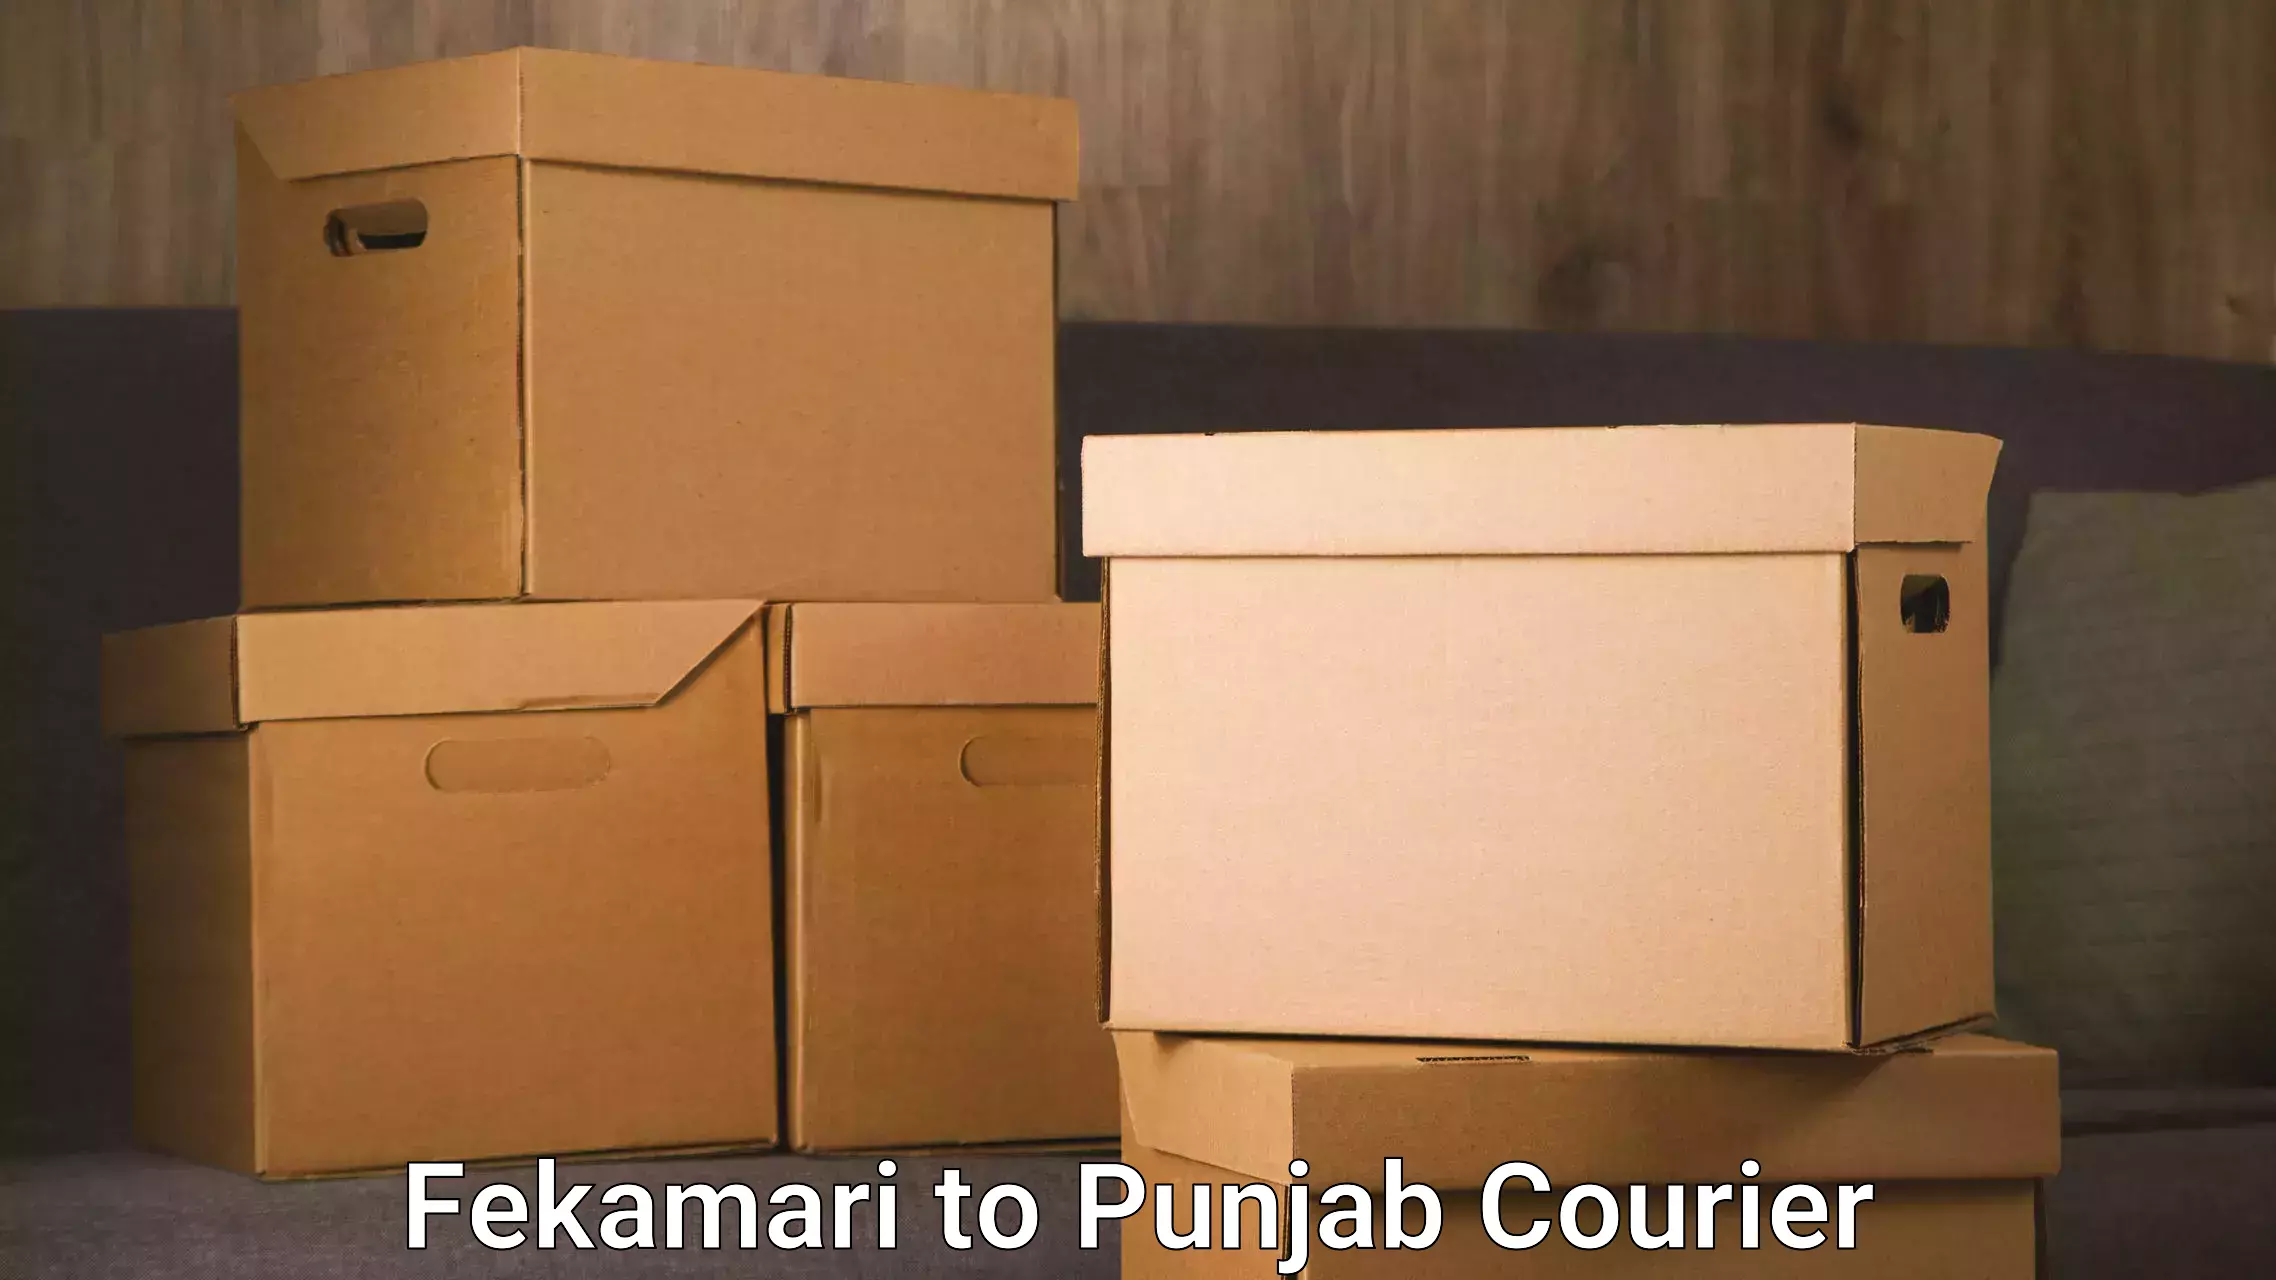 Premium courier services Fekamari to Punjab